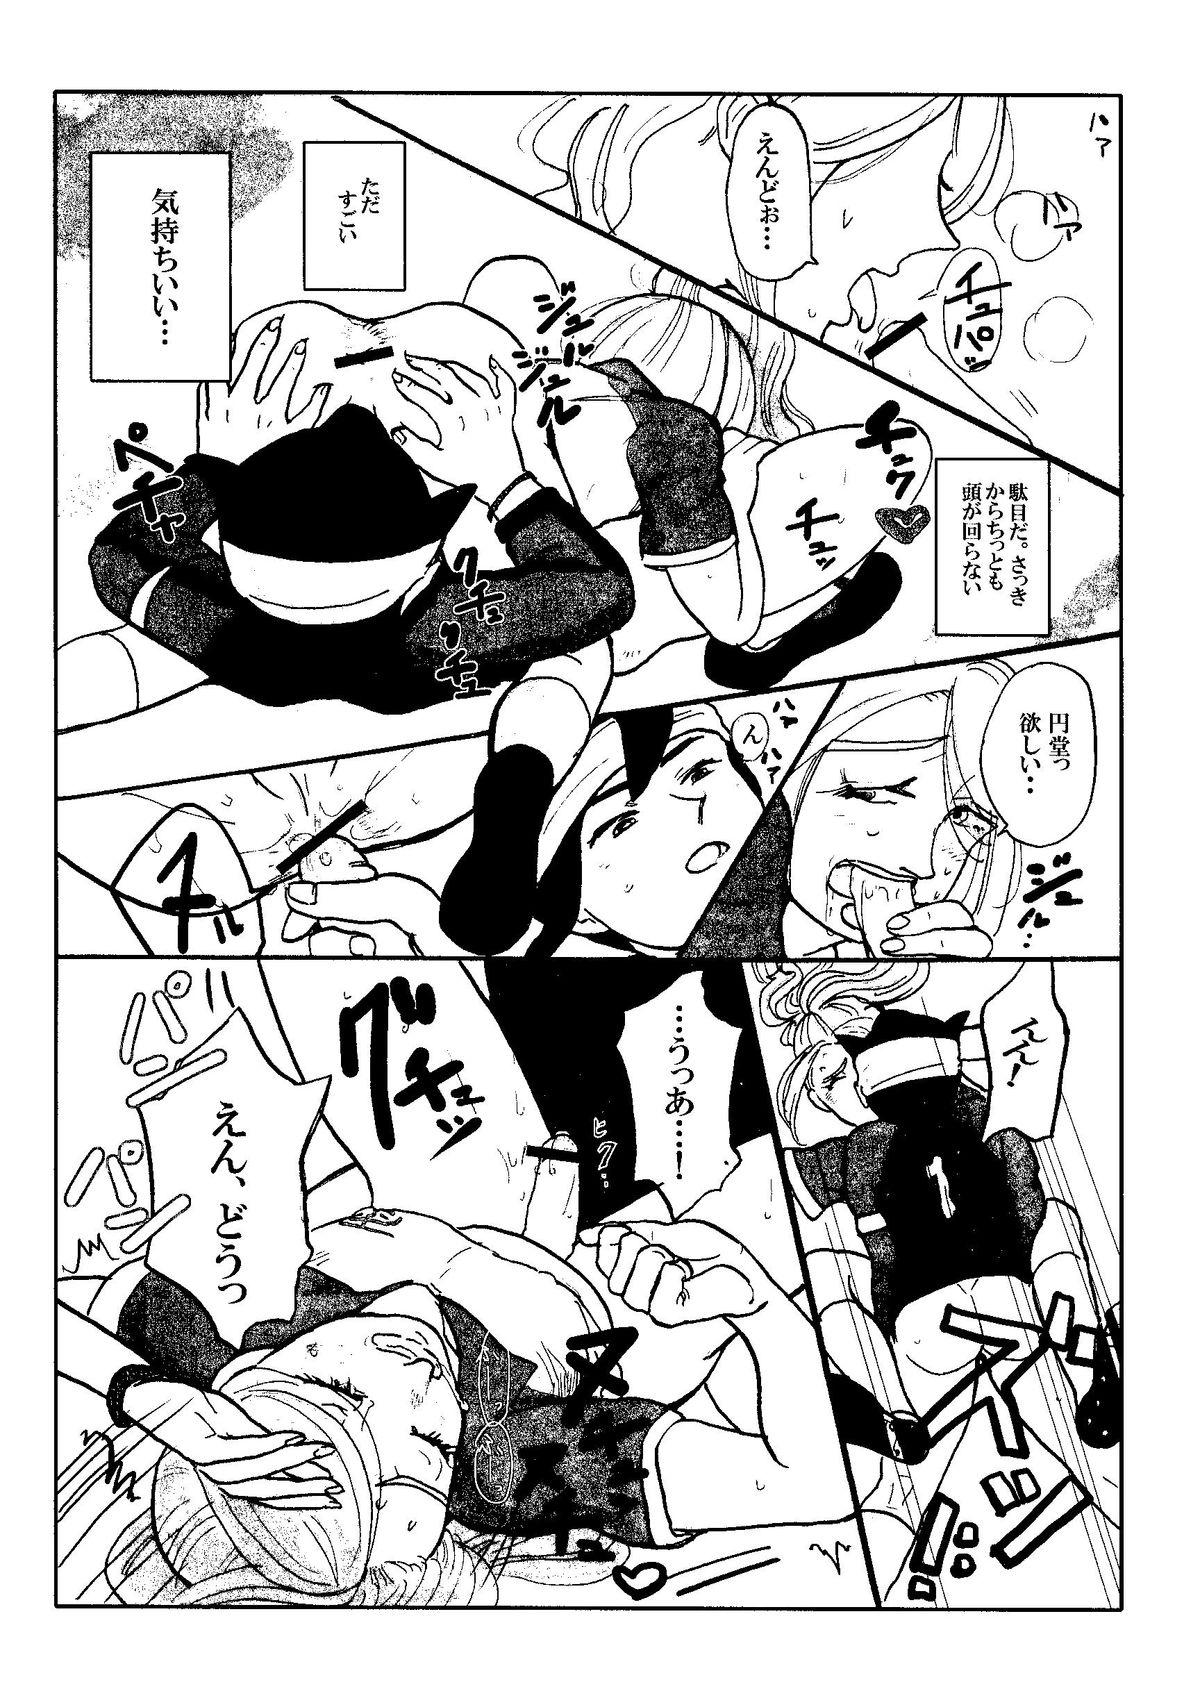 Exposed Kirigakure Takaya (Aniki Otokodou) - ×××× Yarouze! (Inazuma Eleven) - Inazuma eleven Youth Porn - Page 11